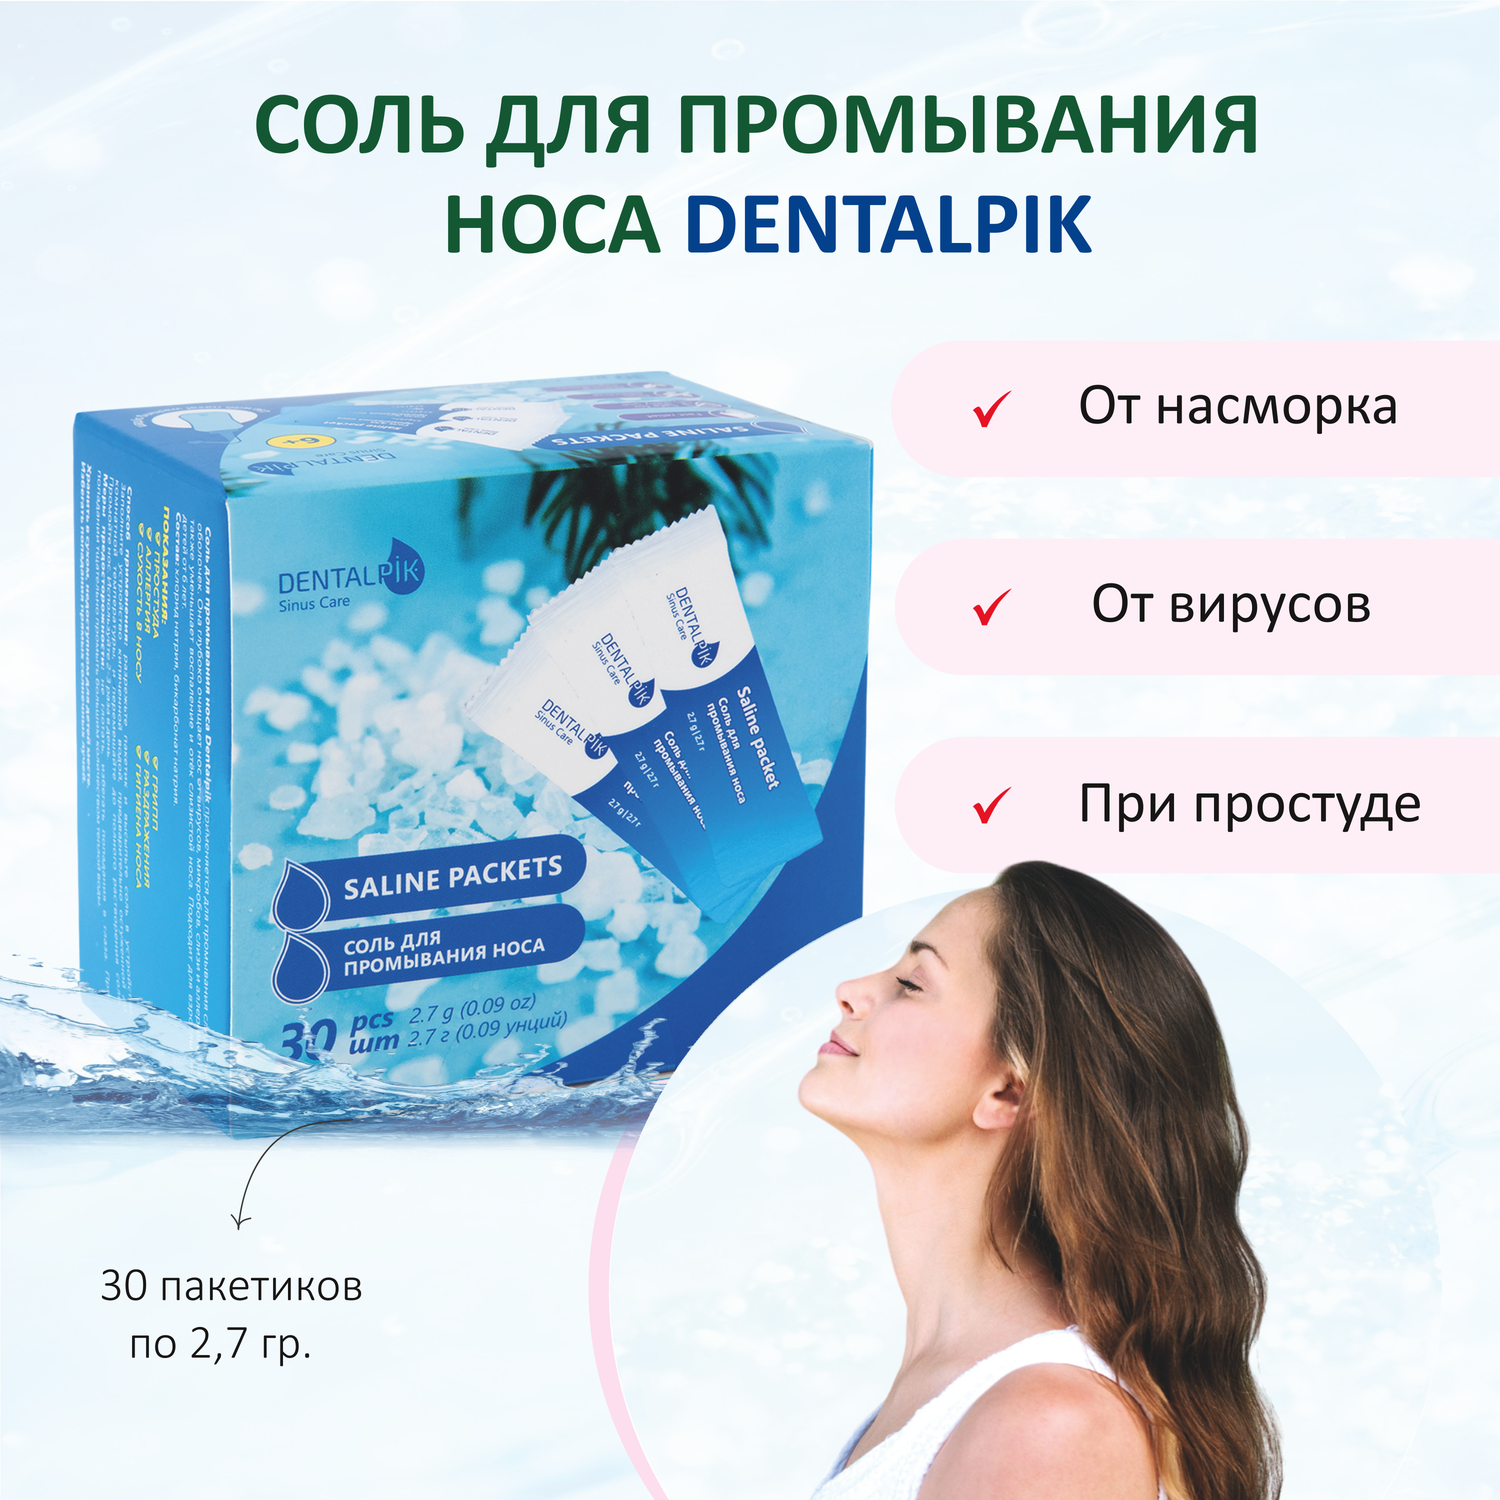 Соль для промывания носа Dentalpik морская Sinus Care косметическая 30 пакетиков в упаковке - фото 1